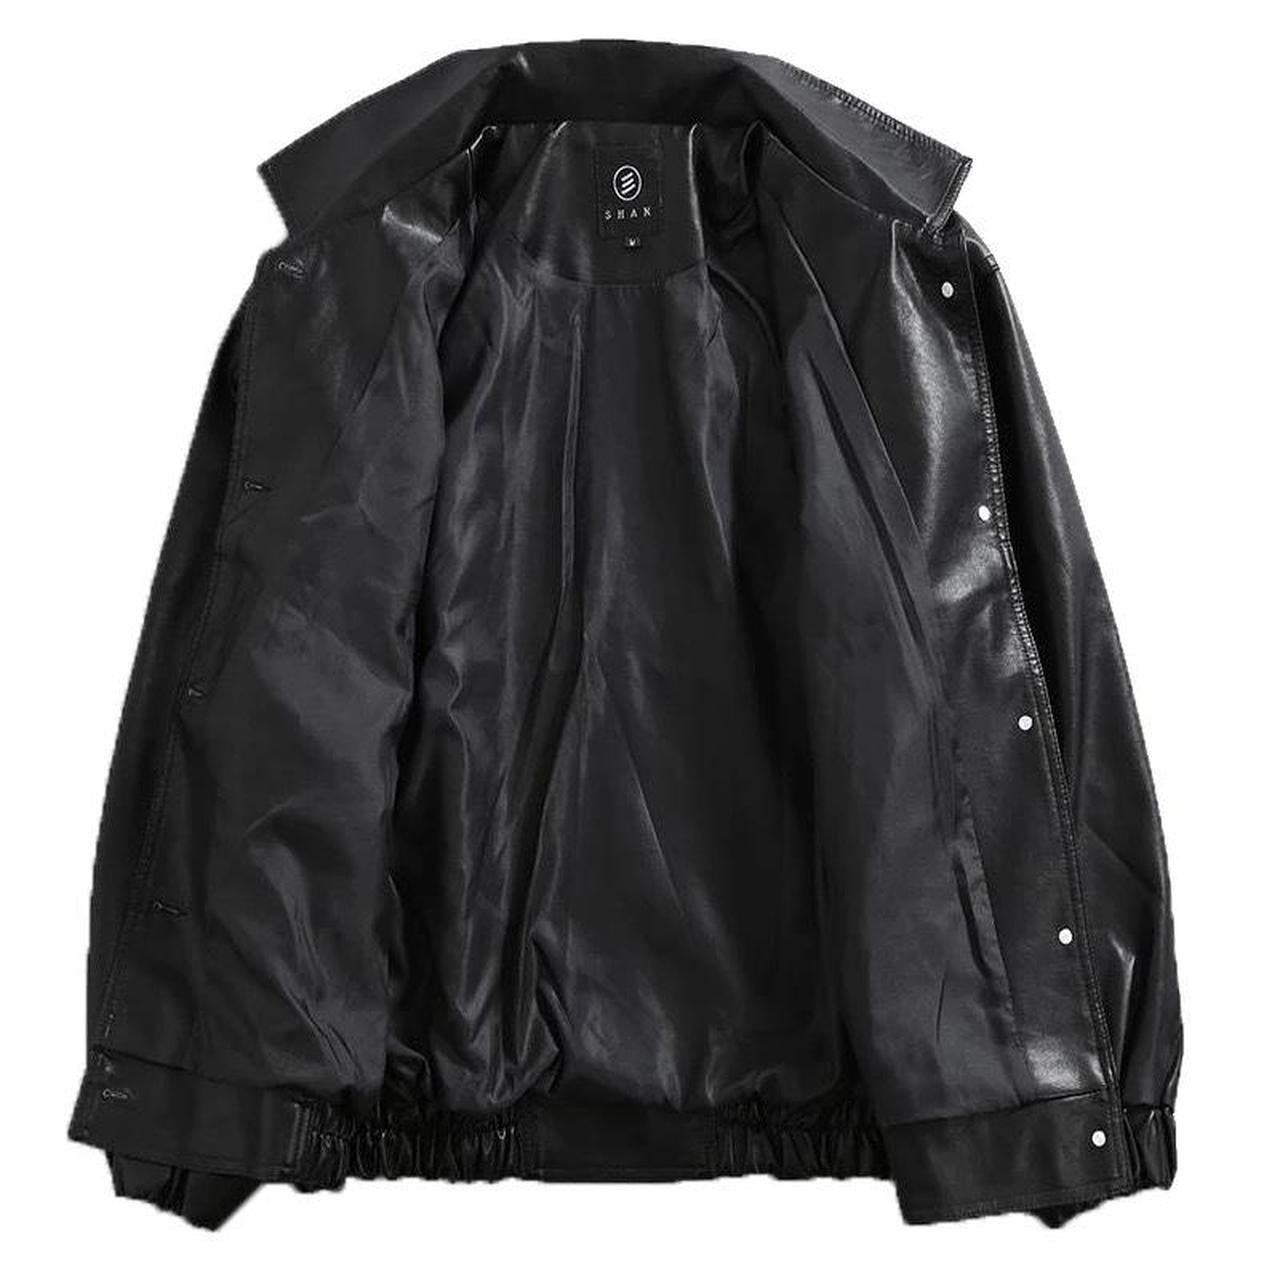 Black Faux Leather Retro Style Bomber Jacket